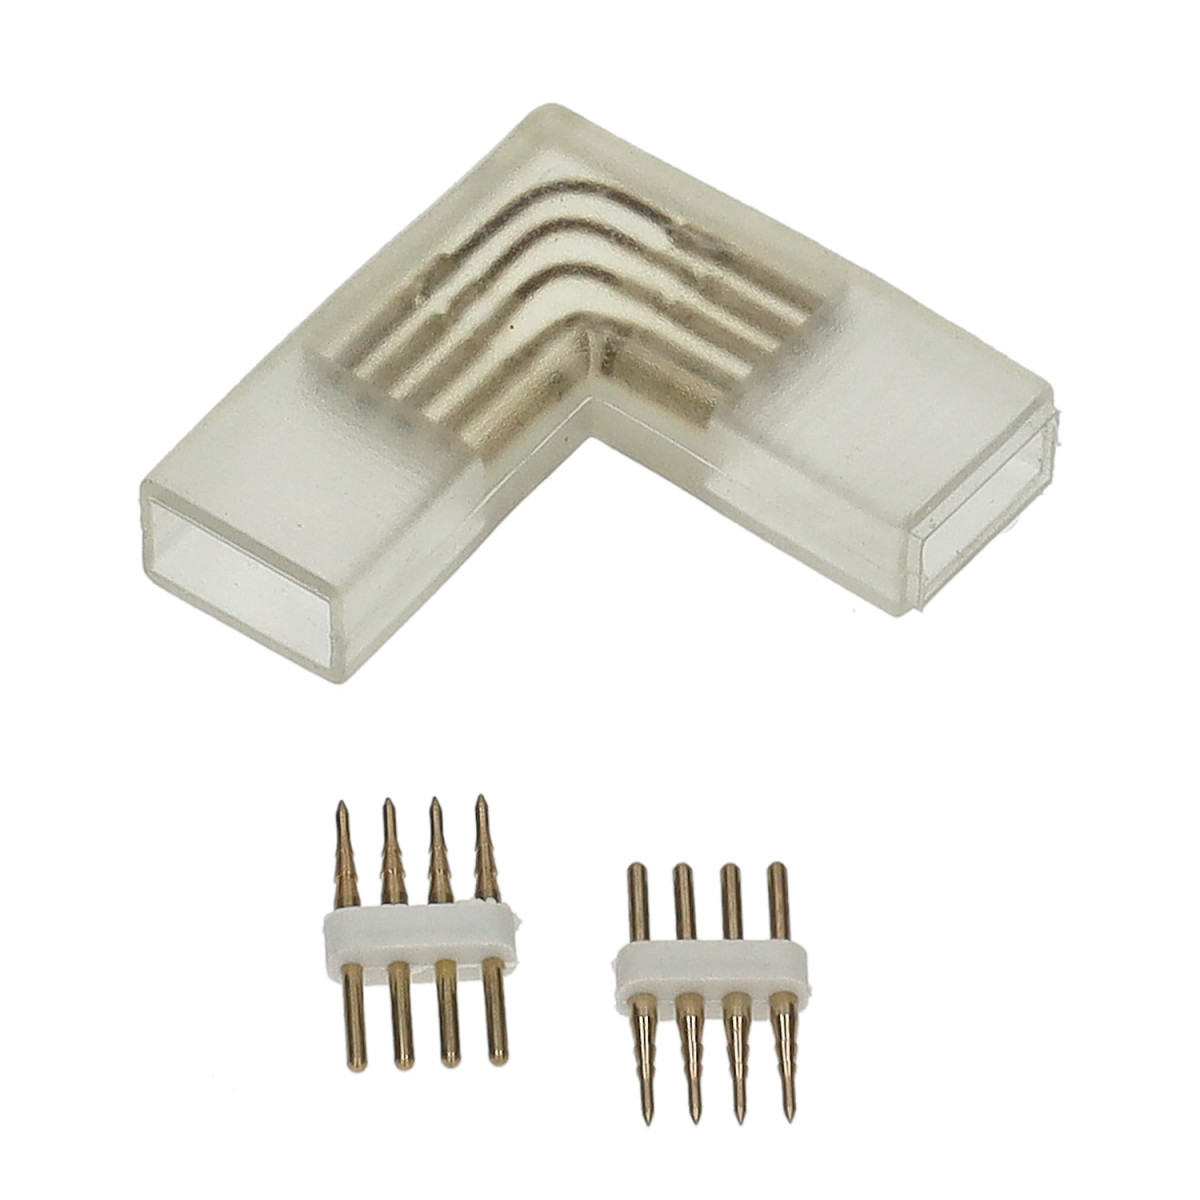 L connector for 220V RGB LED strip